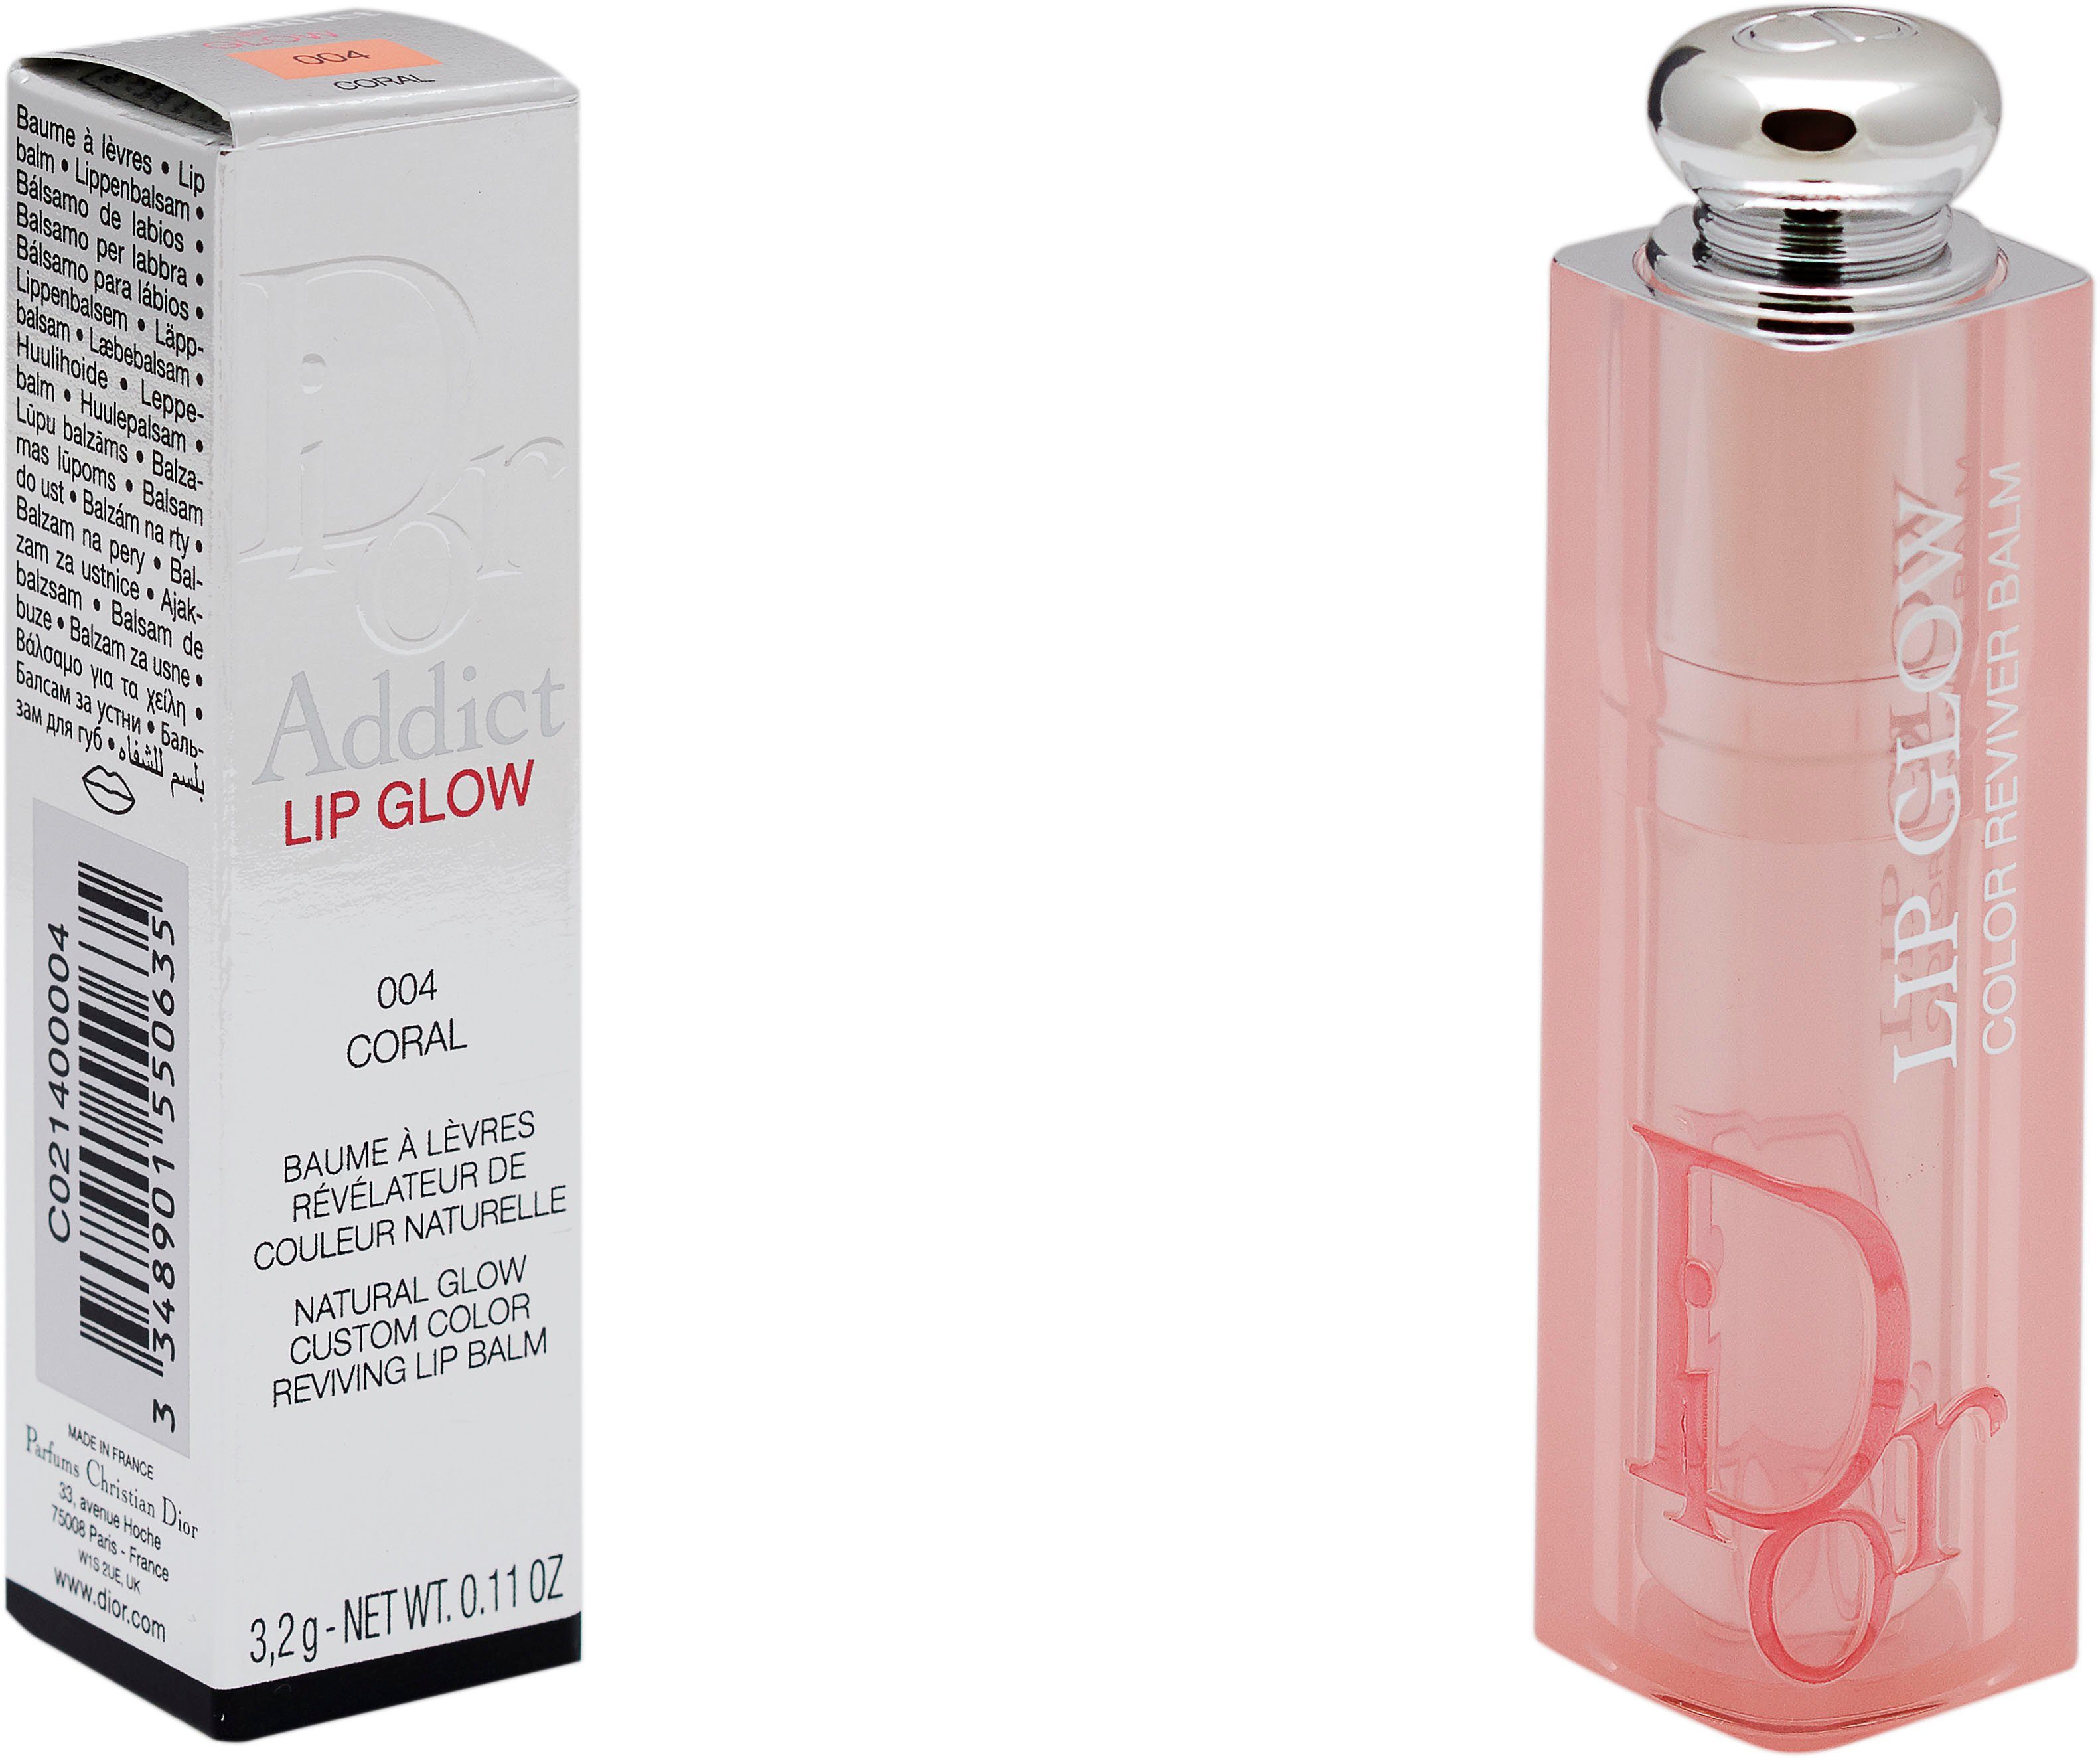 [Sehr beliebtes Standardprodukt] Dior Lippenbalsam Lip Addict Coral Glow Dior 004